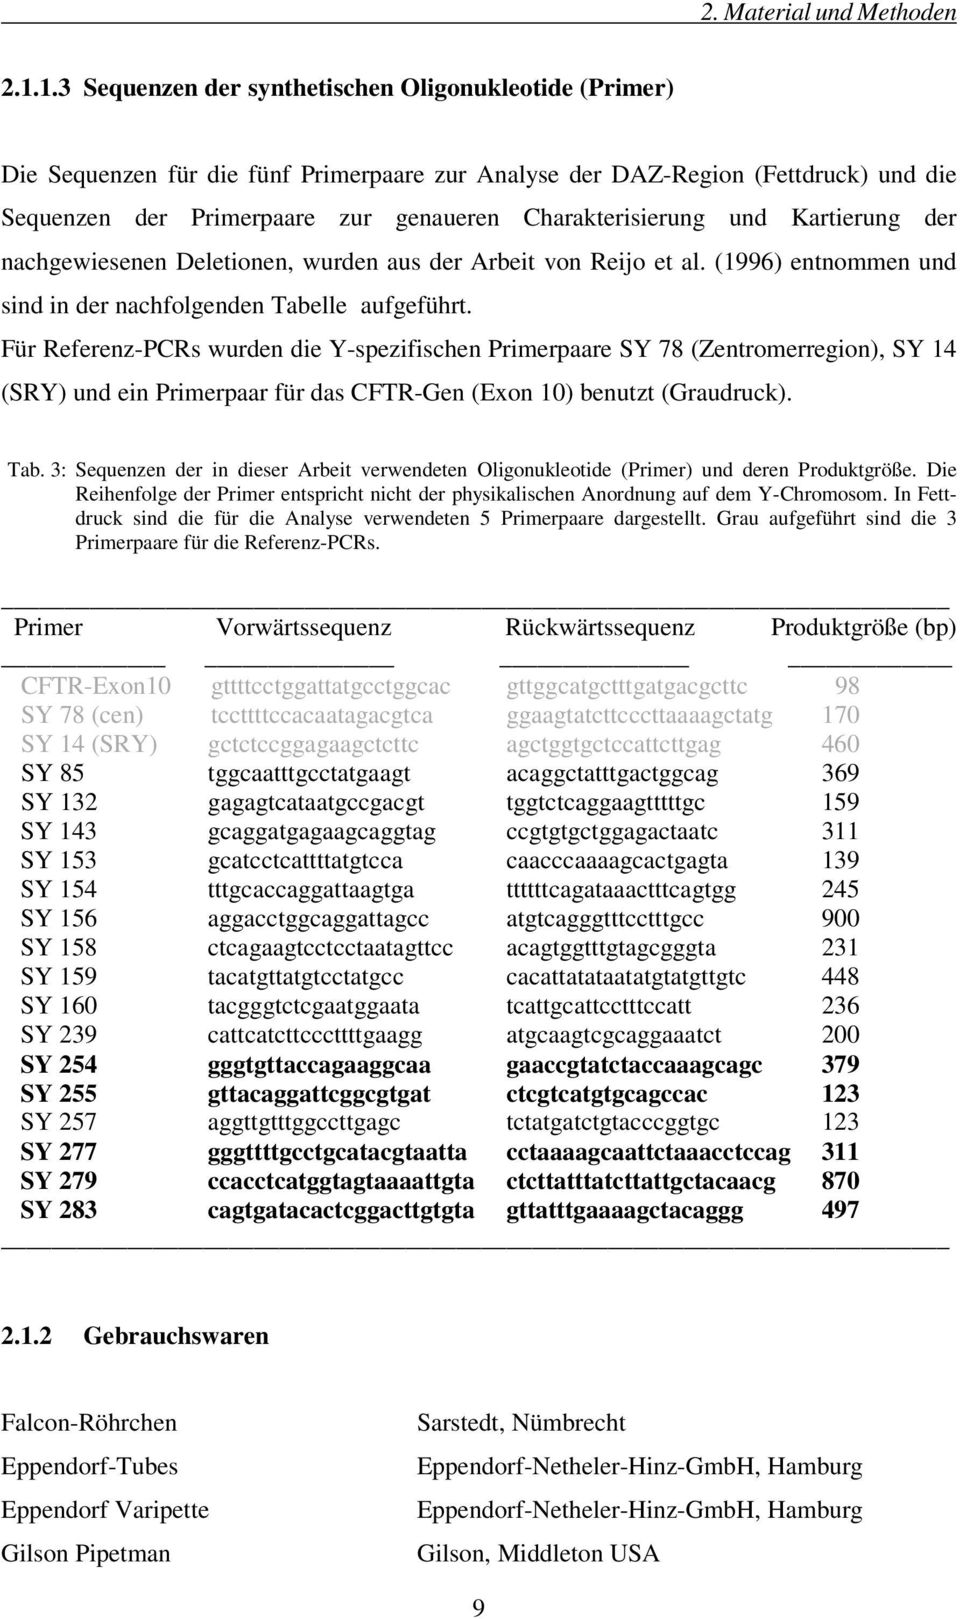 Charakterisierung und Kartierung der nachgewiesenen Deletionen, wurden aus der Arbeit von Reijo et al. (1996) entnommen und sind in der nachfolgenden Tabelle aufgeführt.